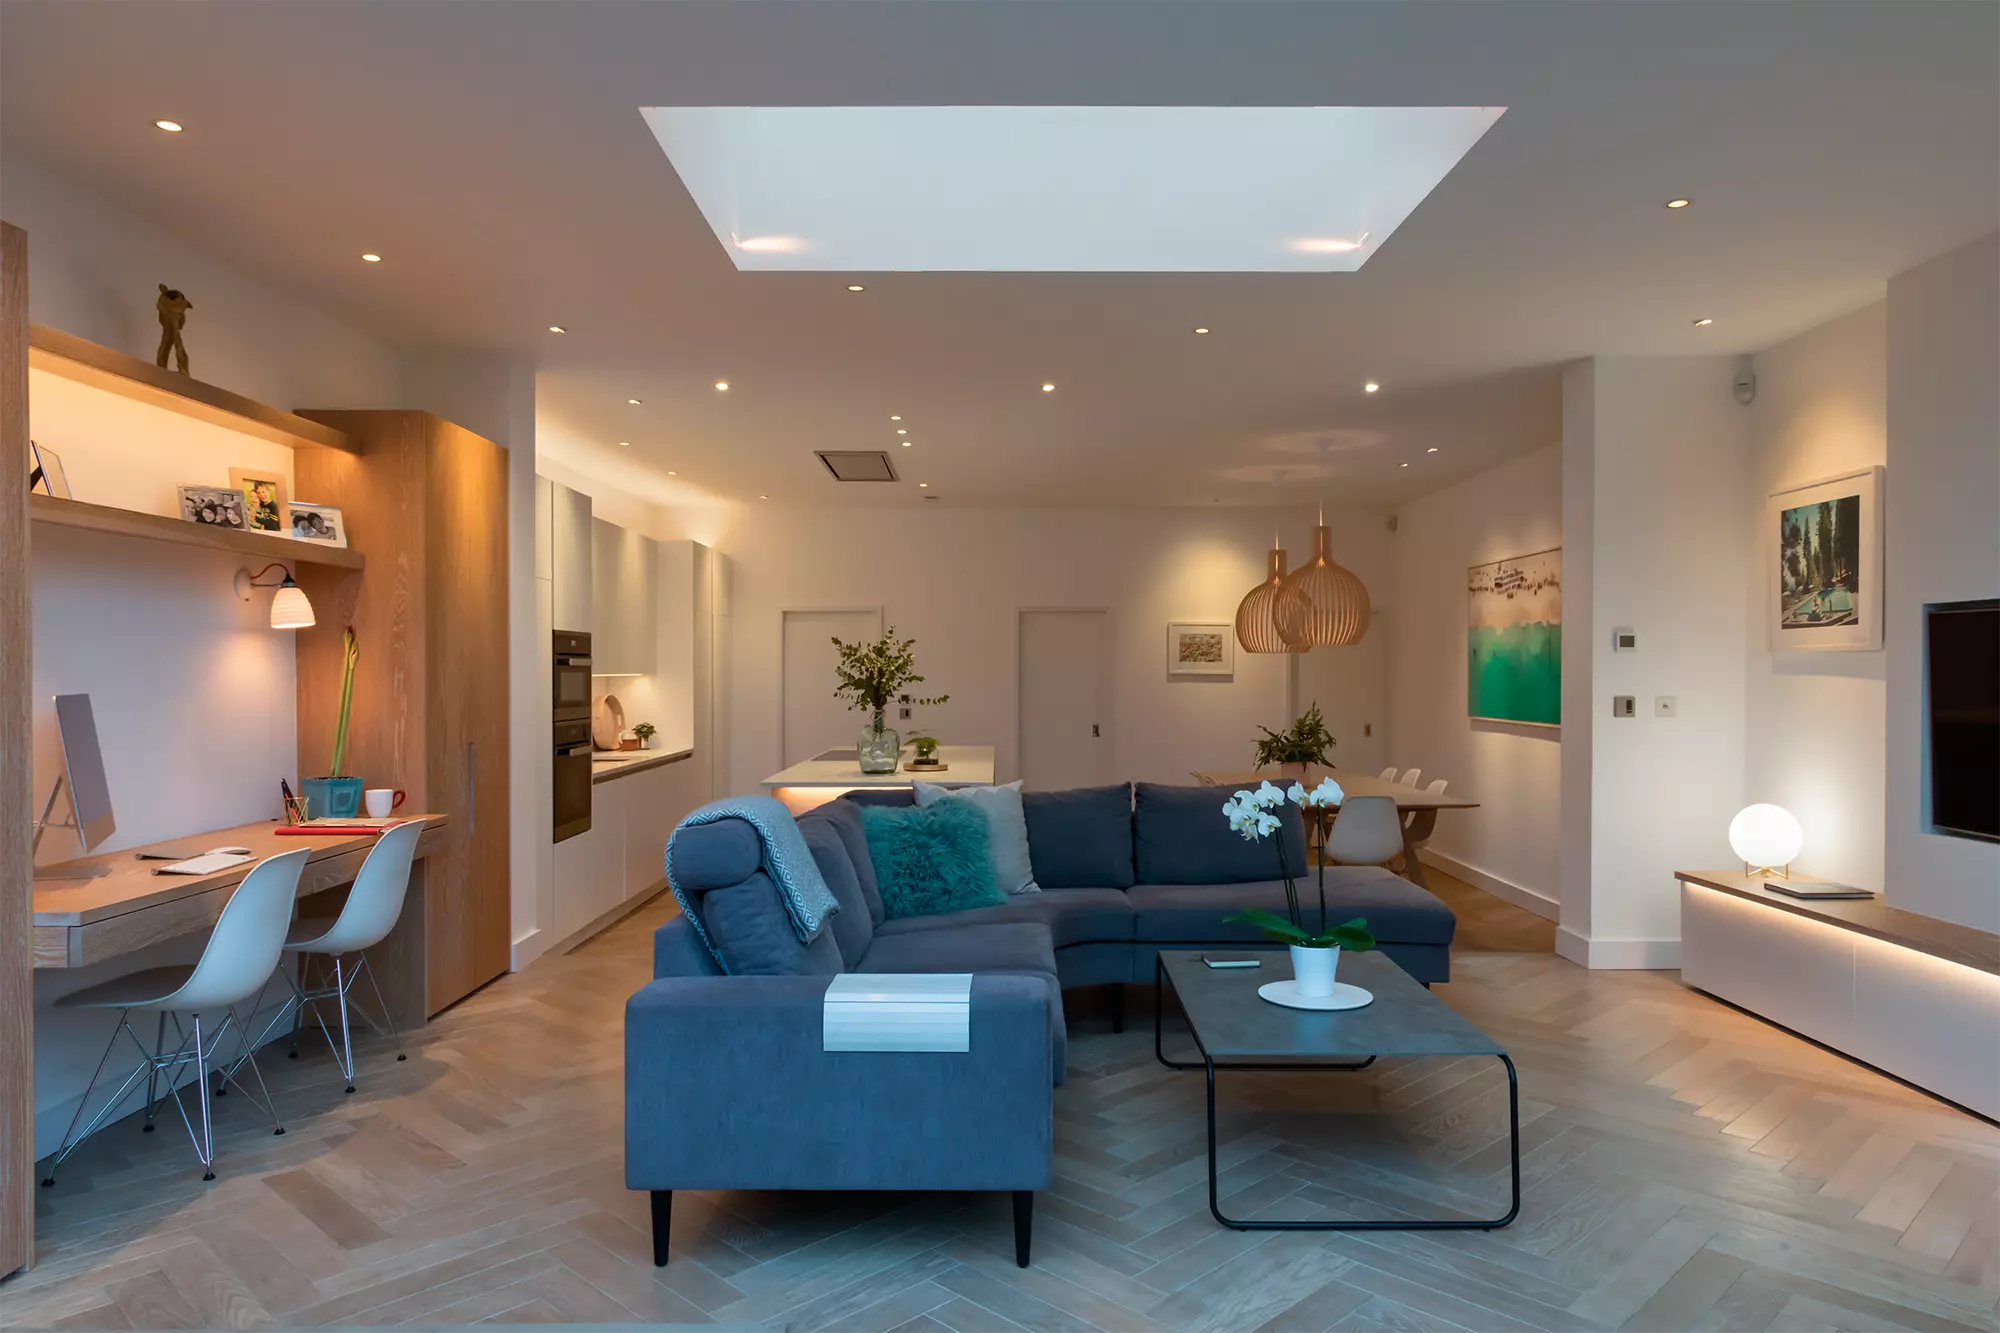 Uma sala de estar moderna e bem iluminada com múltiplas fontes de iluminação, incluindo luzes embutidas no teto e uma grande clarabóia